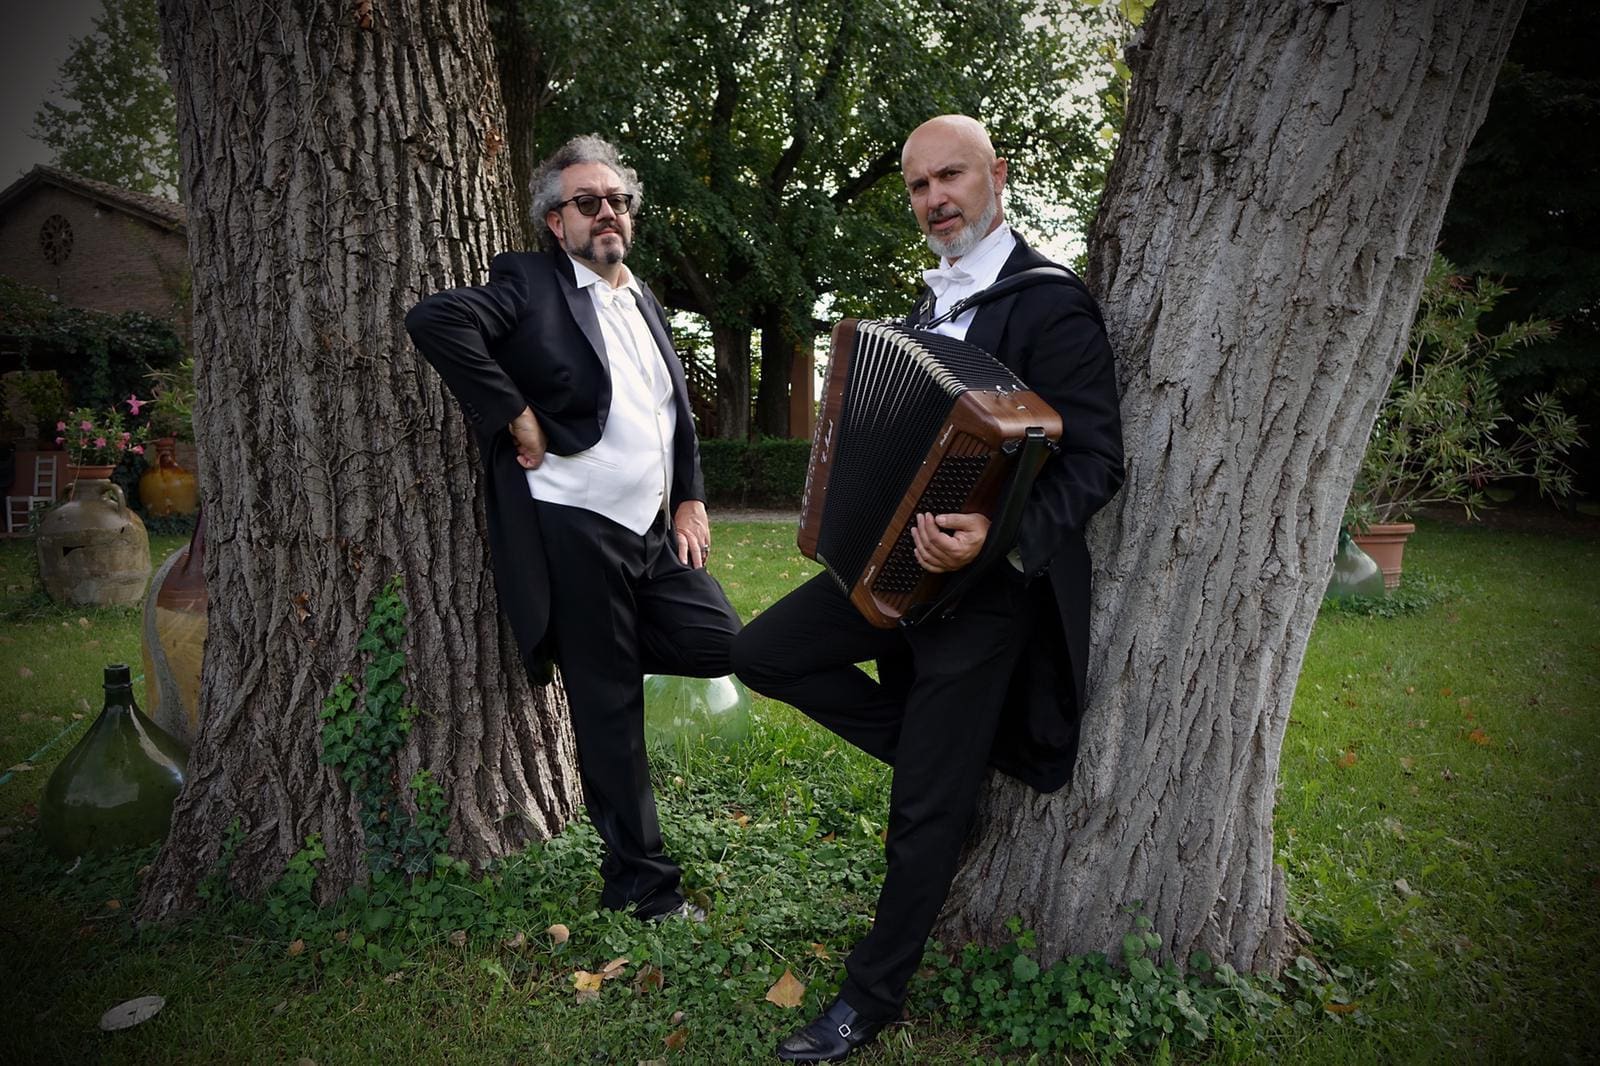 Claudio Mattioli e Massimilliano Barbolini cantam e interpretam com atuações cômicas